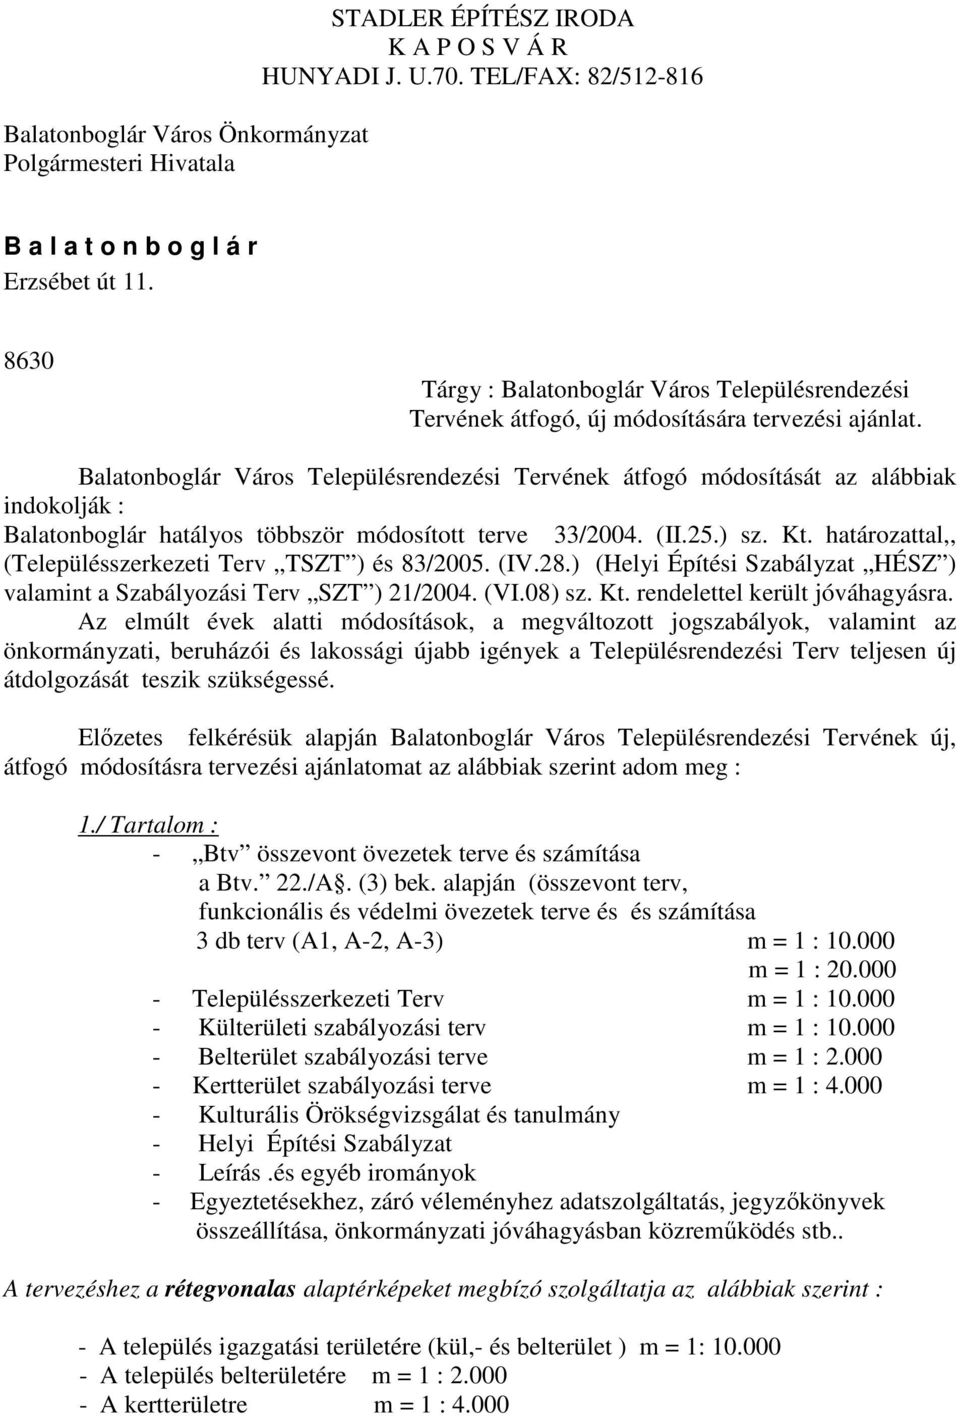 Balatonboglár Város Településrendezési Tervének átfogó módosítását az alábbiak indokolják : Balatonboglár hatályos többször módosított terve 33/2004. (II.25.) sz. Kt.